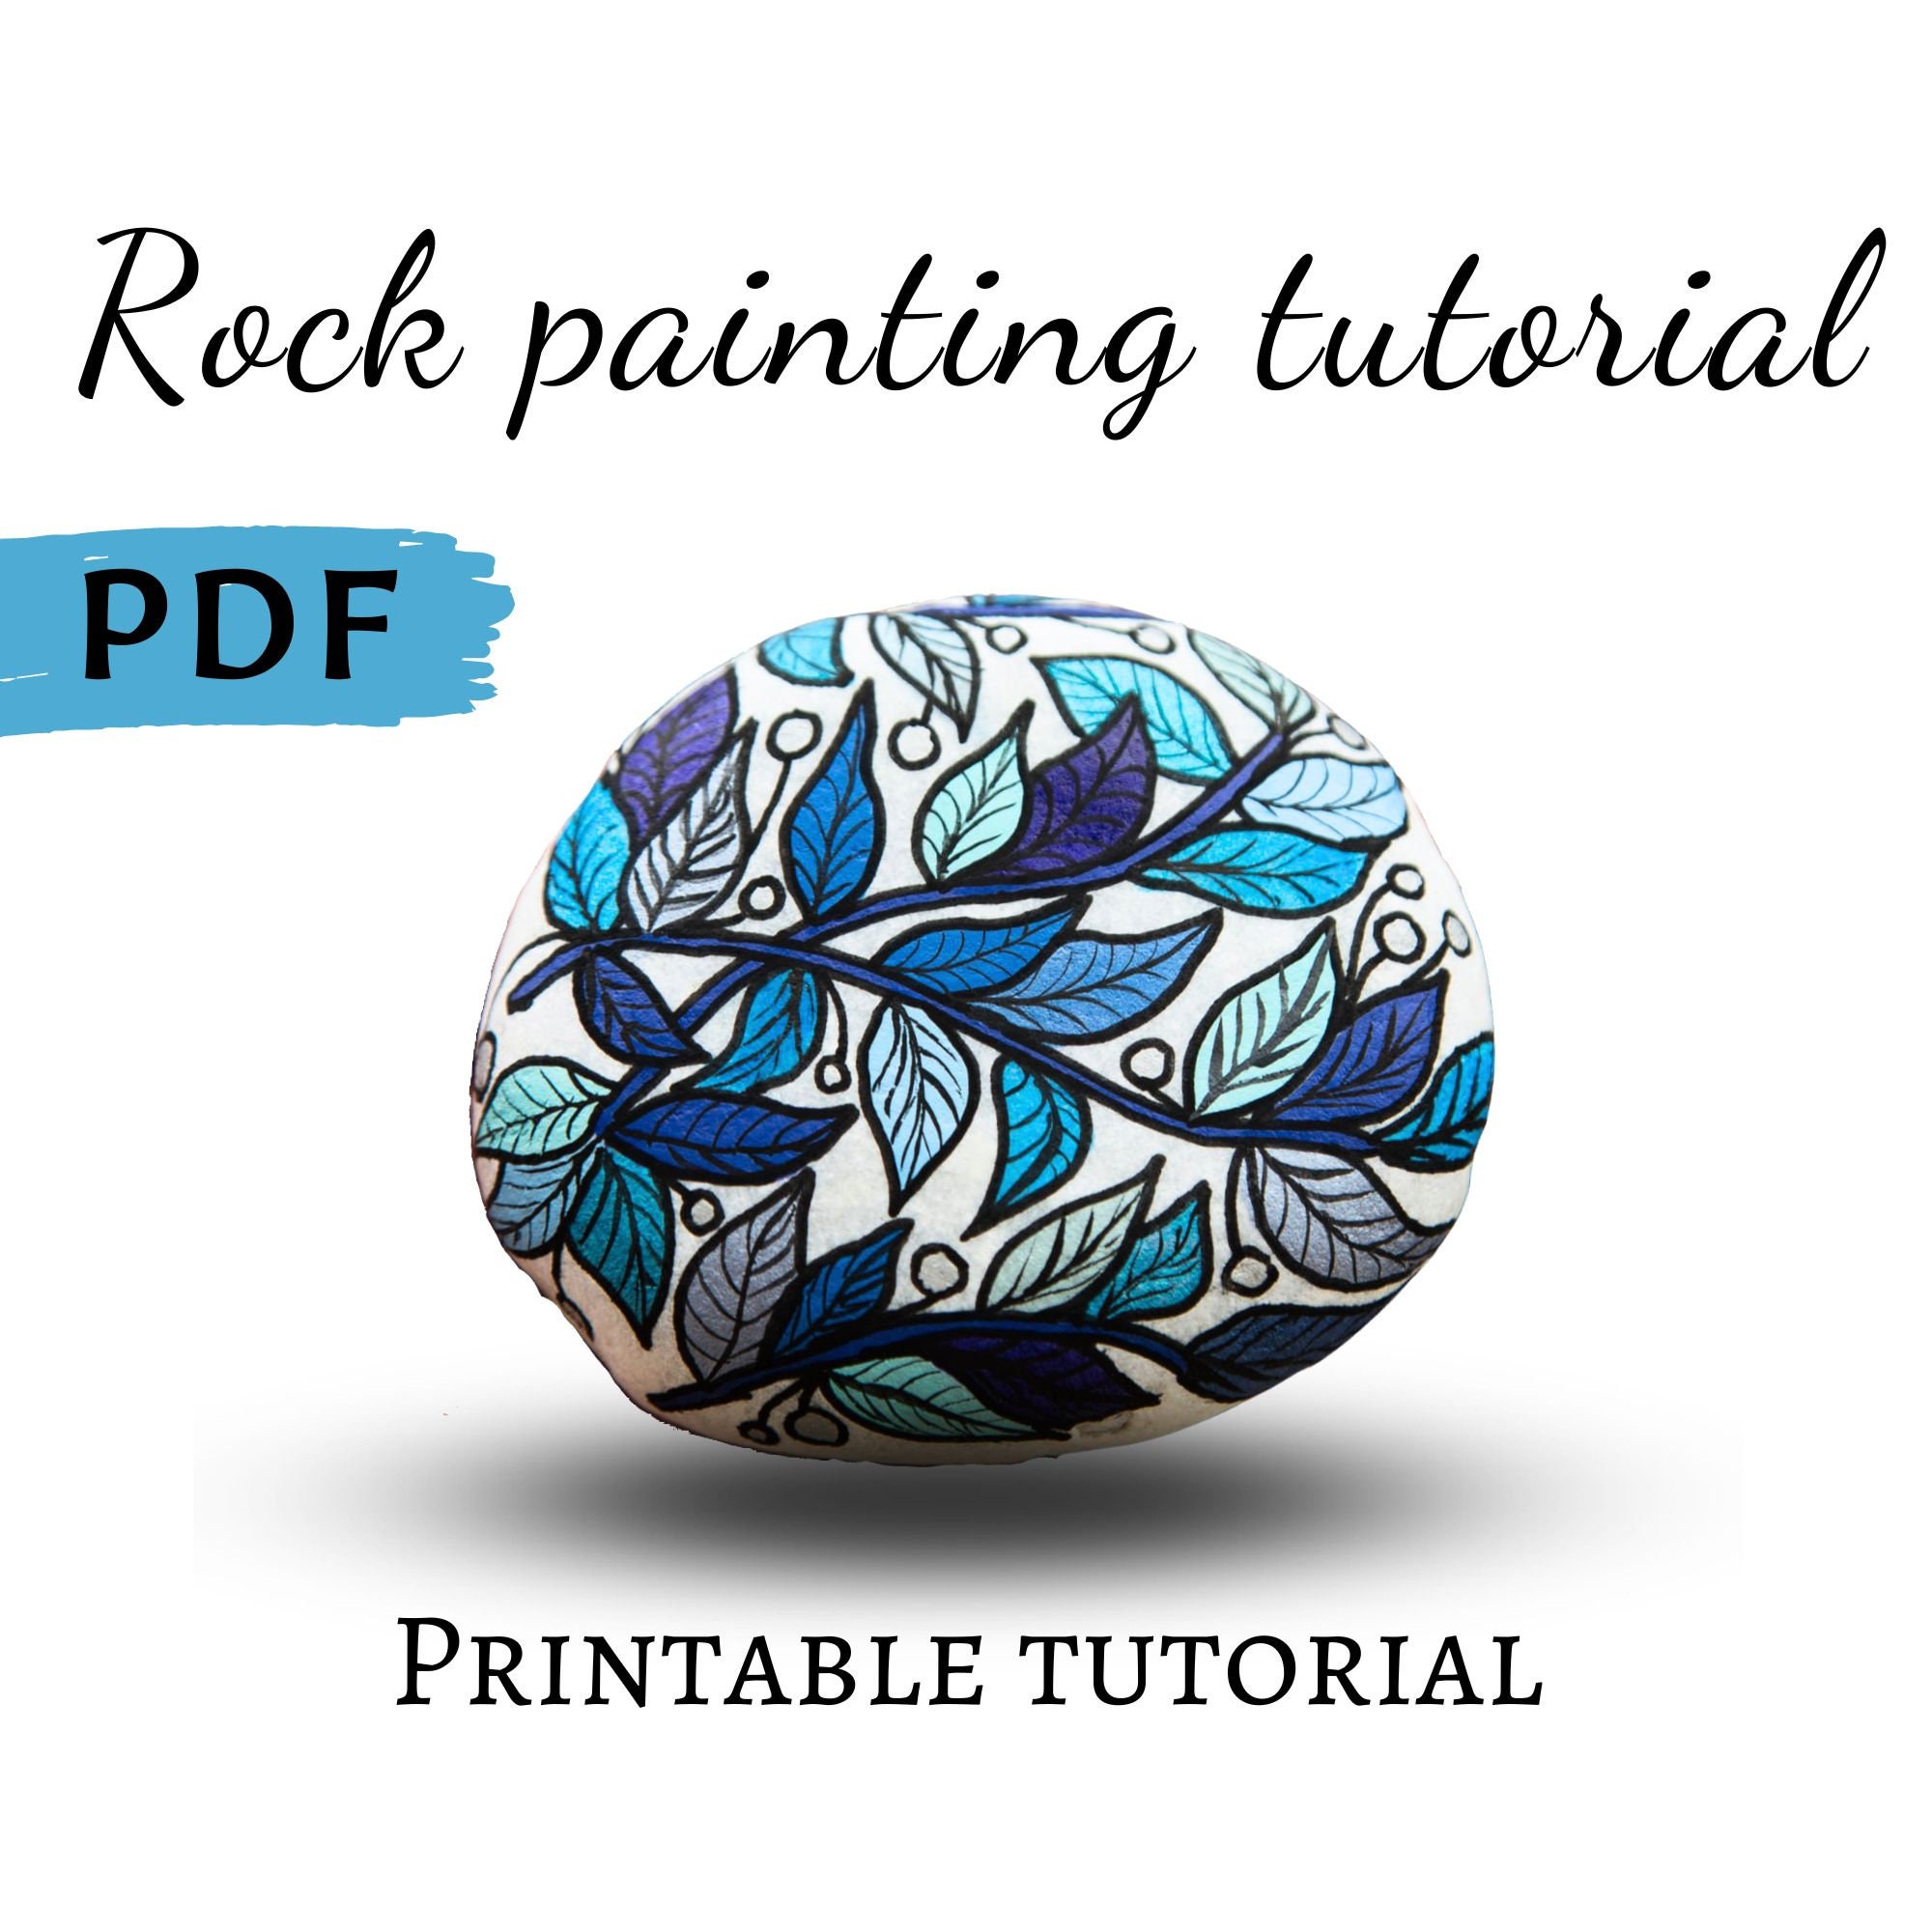 Rock Painting Tutorial, Printable Tutorial, Hand Painted Rocks